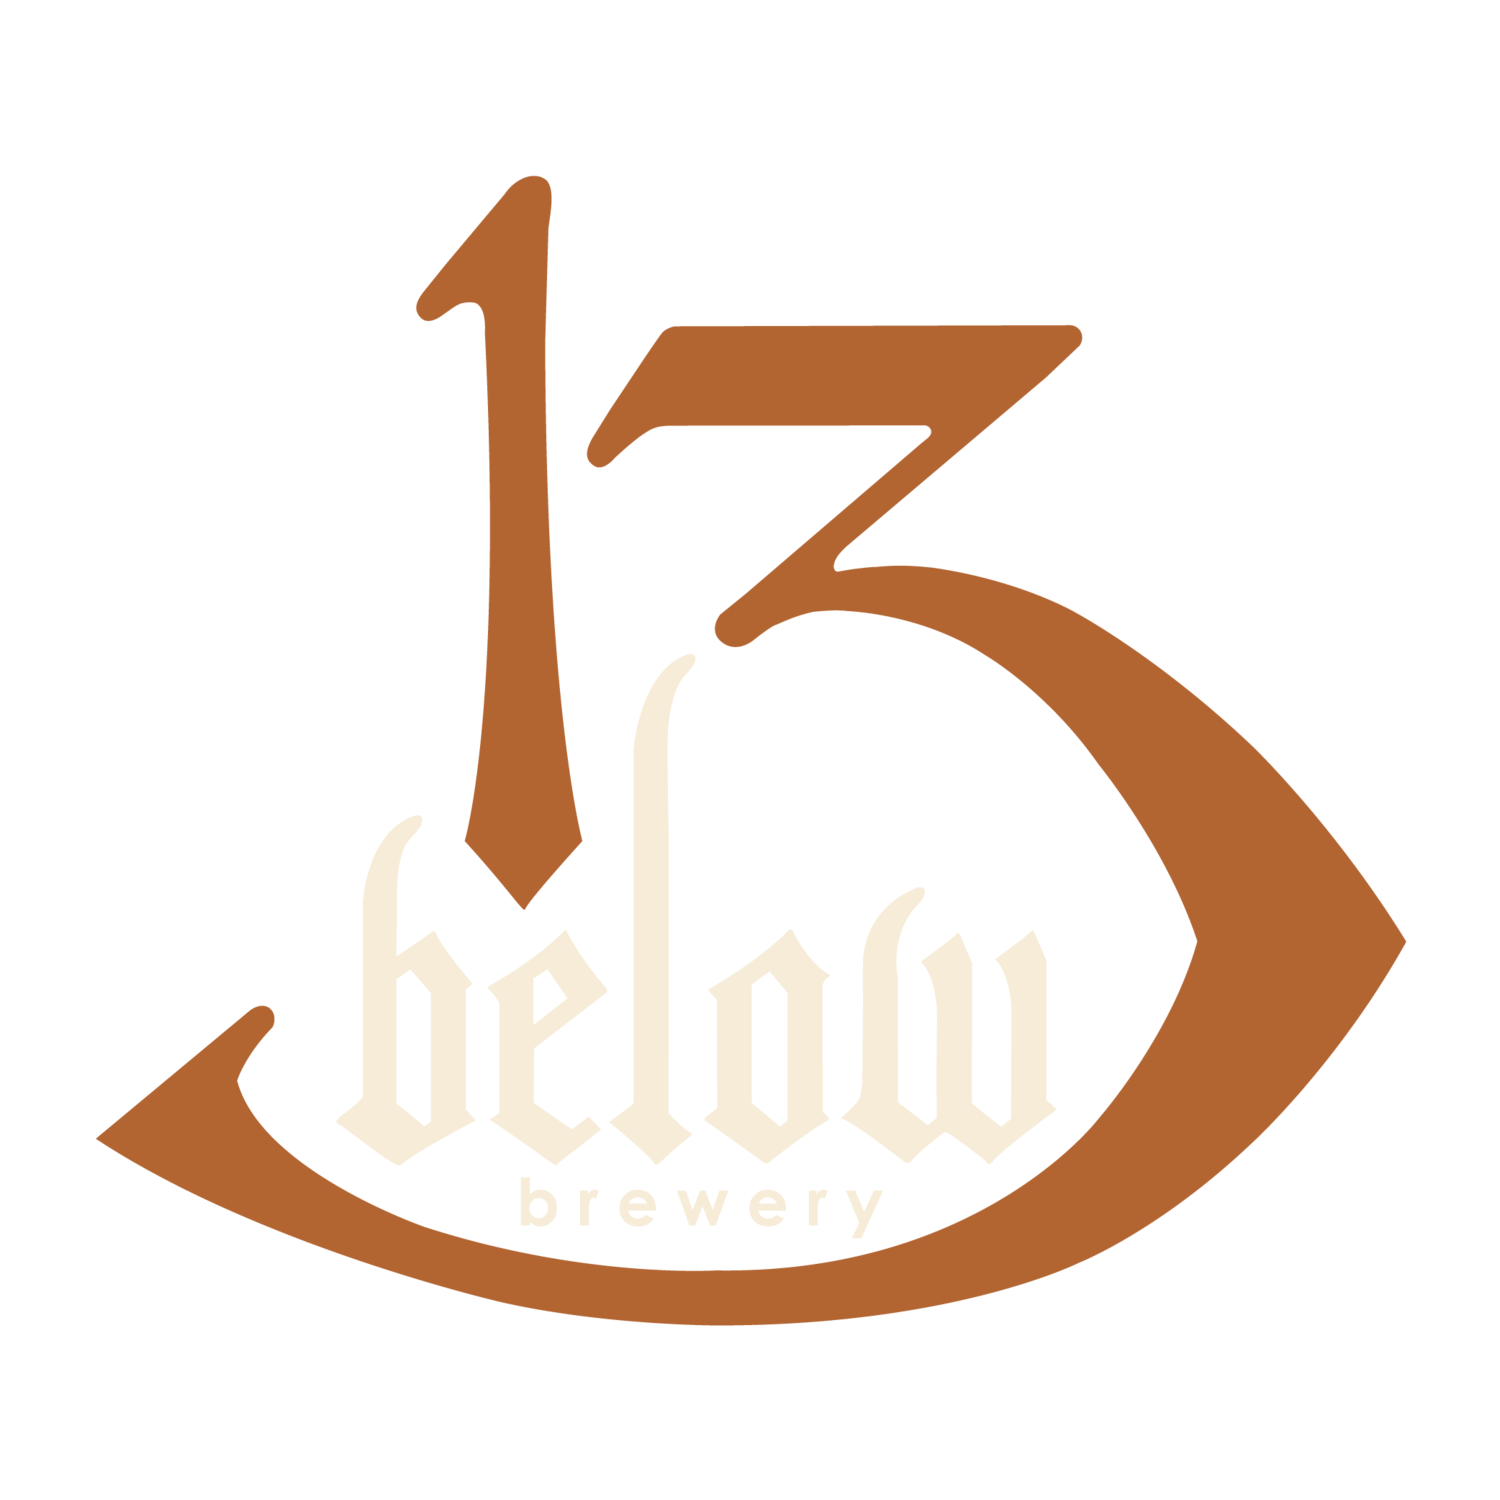 13 Below Brewery